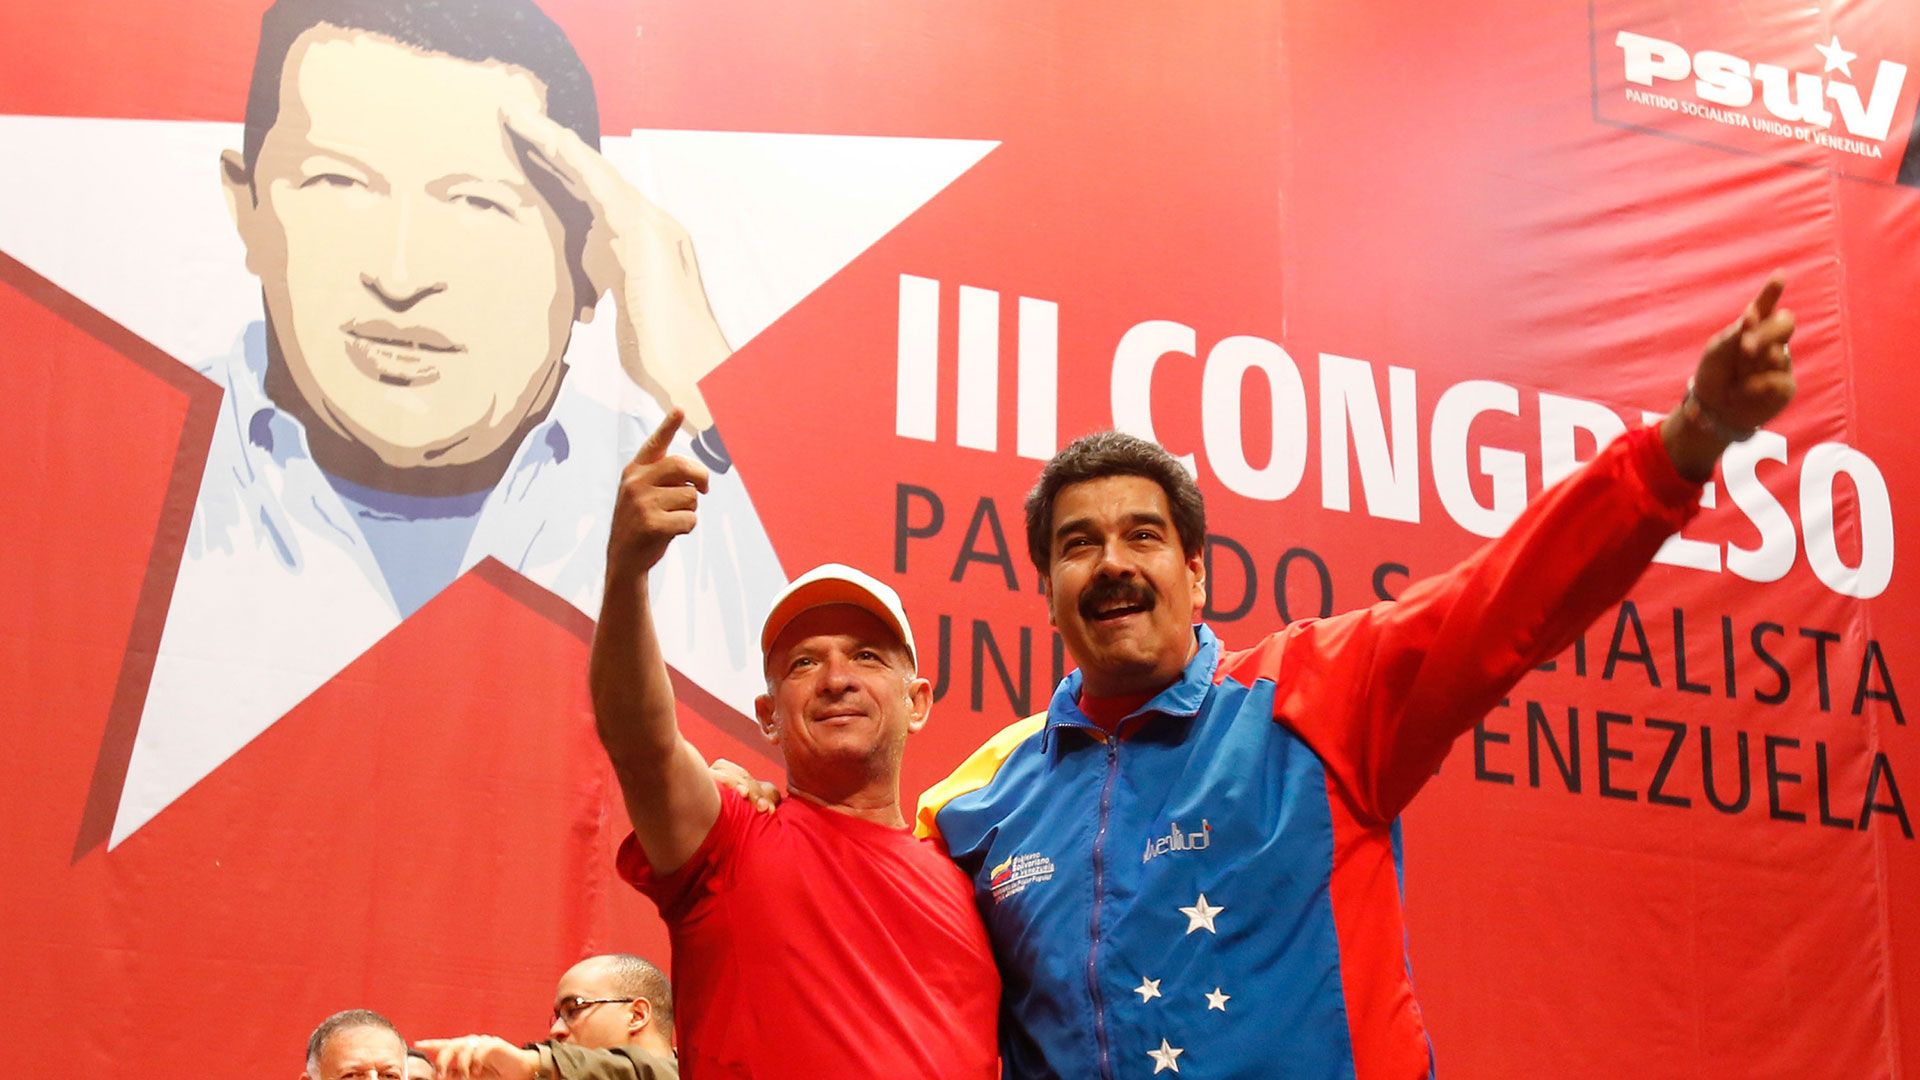 El “Pollo” Carvajal pidió a sus camaradas de armas que se aparten del régimen chavista y permitan el ingreso de ayuda humanitaria a Venezuela (Reuters)